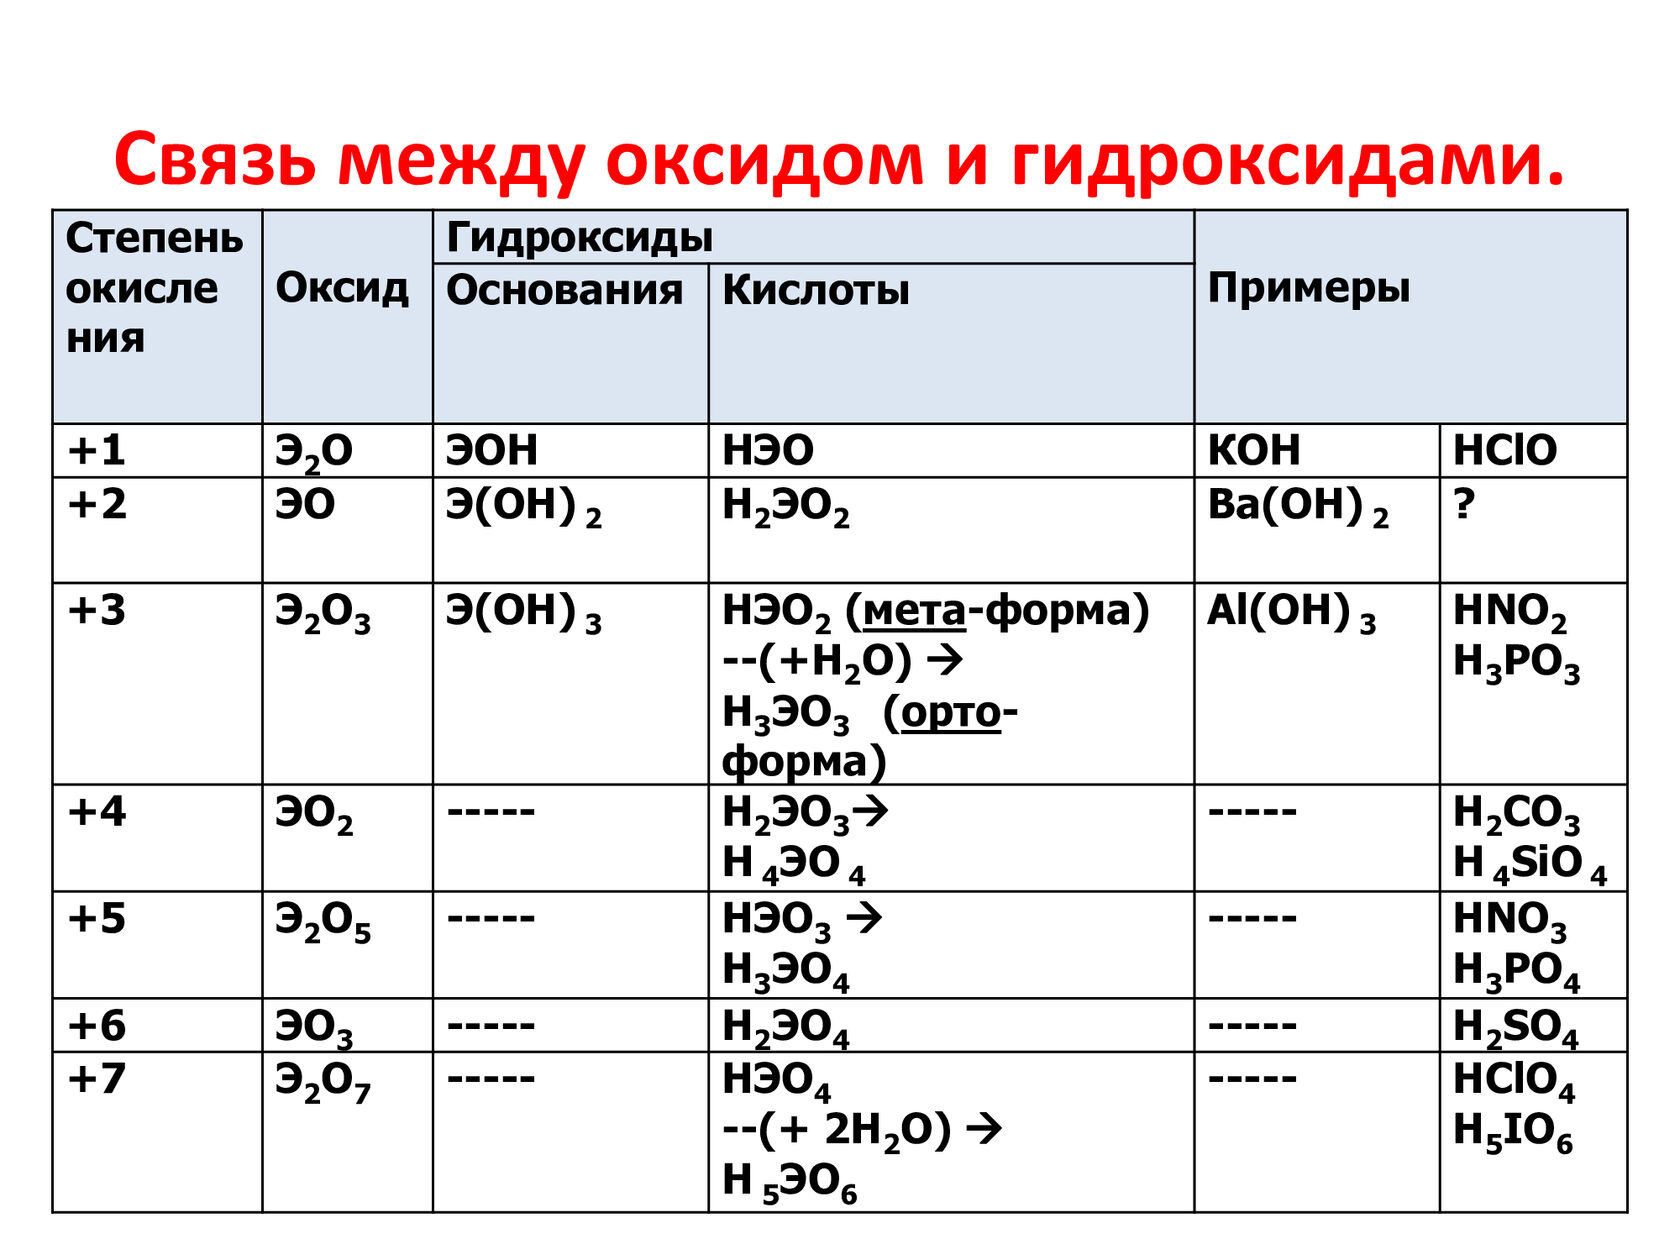 Как отличить гидроксиды. Классификация оксидов и гидроксидов по характеру химических свойств. Сравнительная таблица оксидов и гидроксидов. Таблица оксидов и гидроксидов. Таблица составления оксидов гидроксидов.